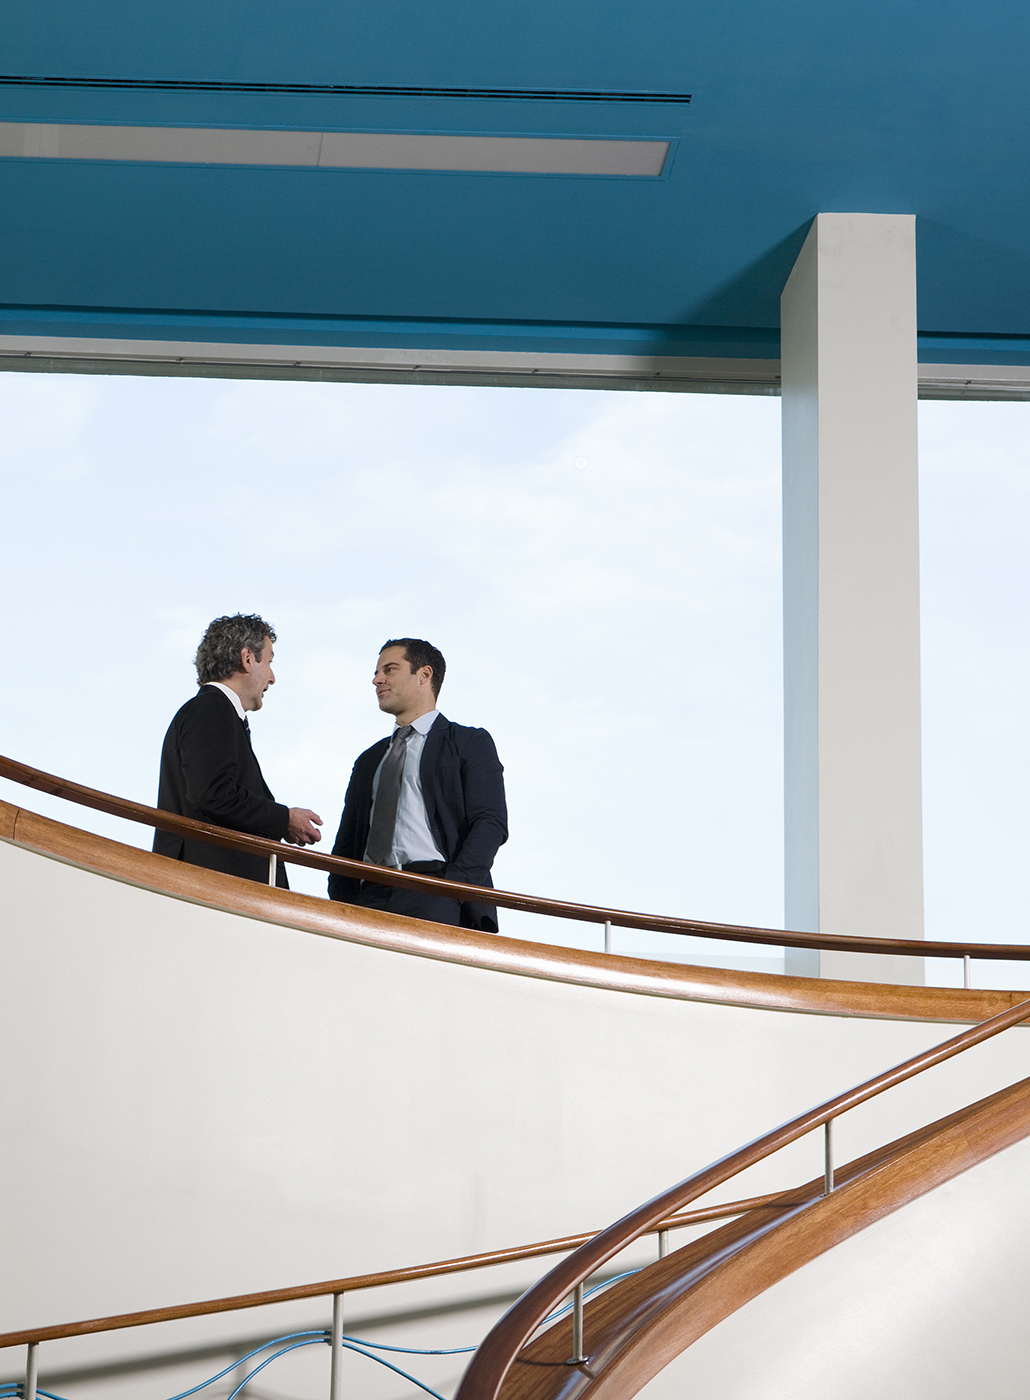 Deux hommes d’affaires discutant dans un escalier moderne.